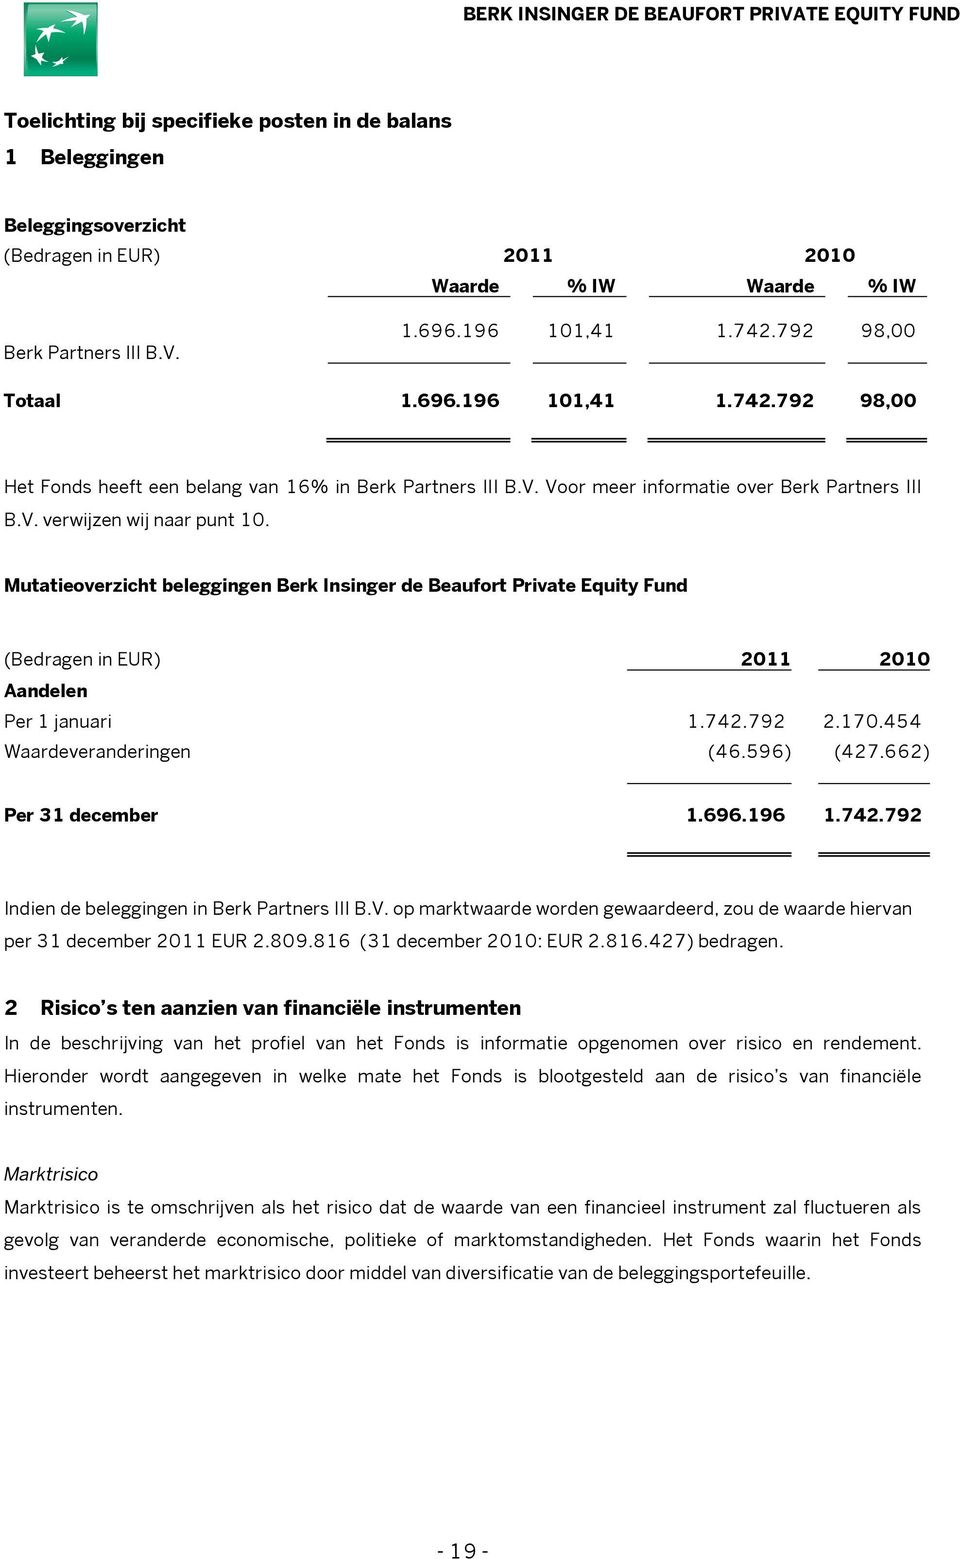 Mutatieoverzicht beleggingen Berk Insinger de Beaufort Private Equity Fund (Bedragen in EUR) 2011 2010 Aandelen Per 1 januari 1.742.792 2.170.454 Waardeveranderingen (46.596) (427.